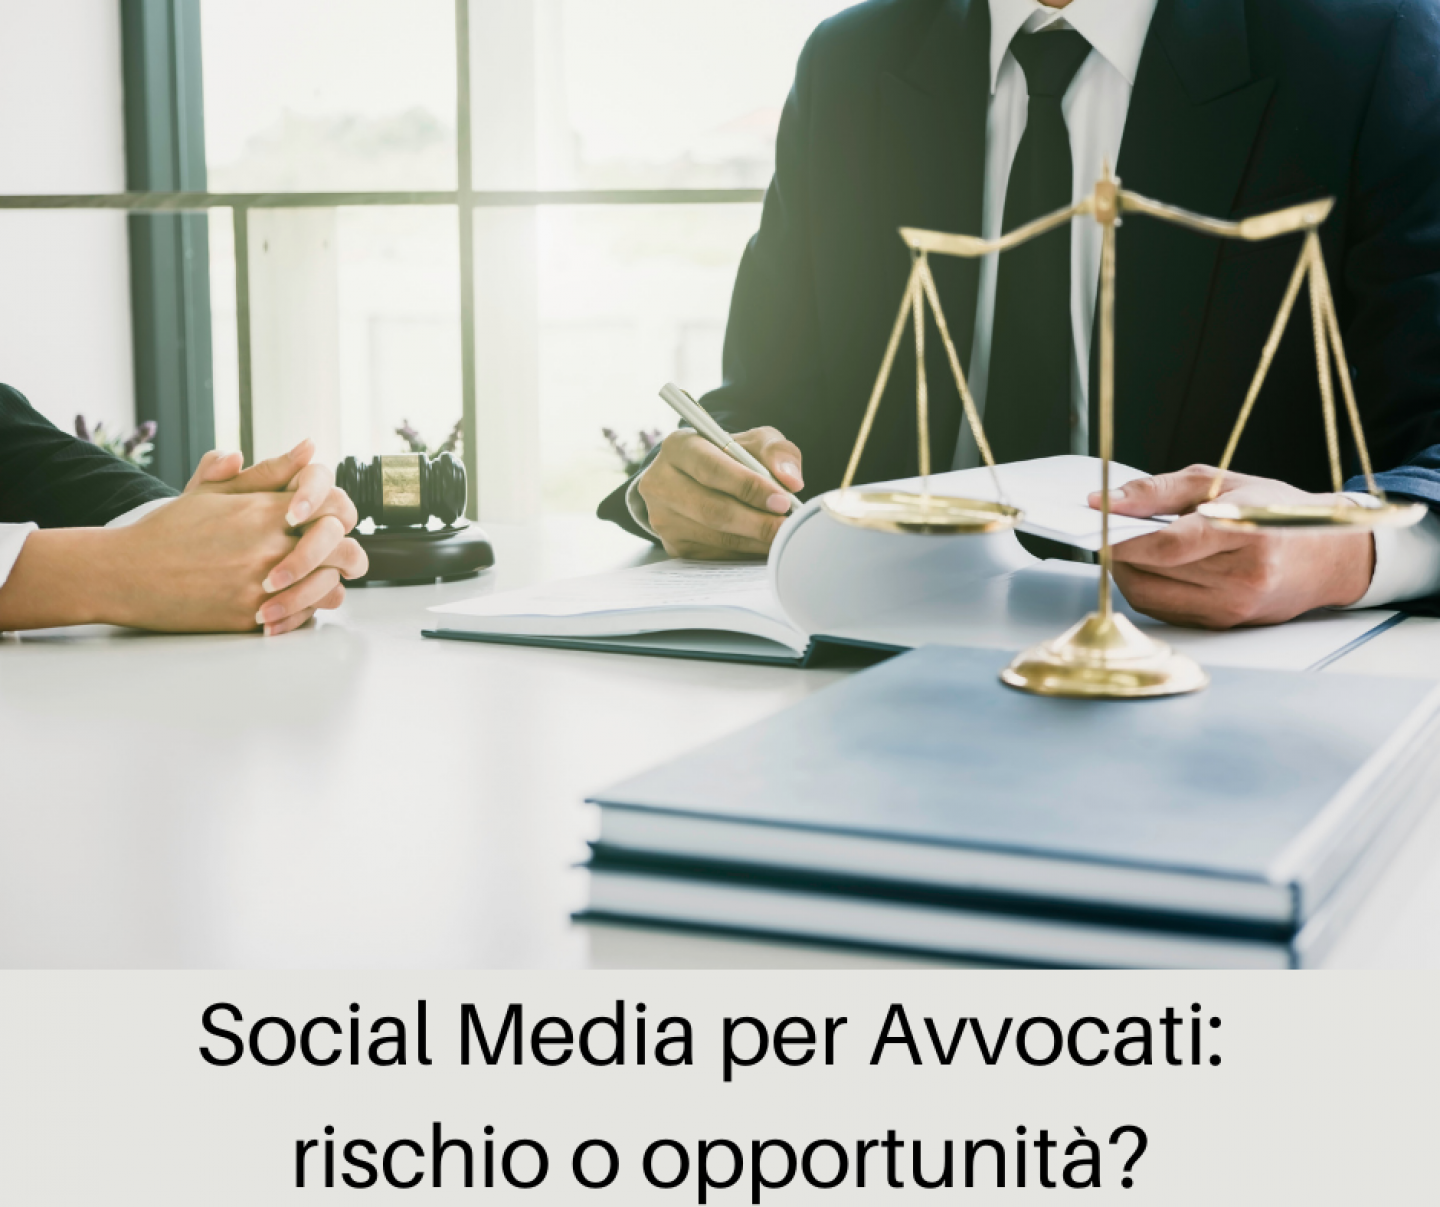 Social Media per Avvocati rischio o opportunità